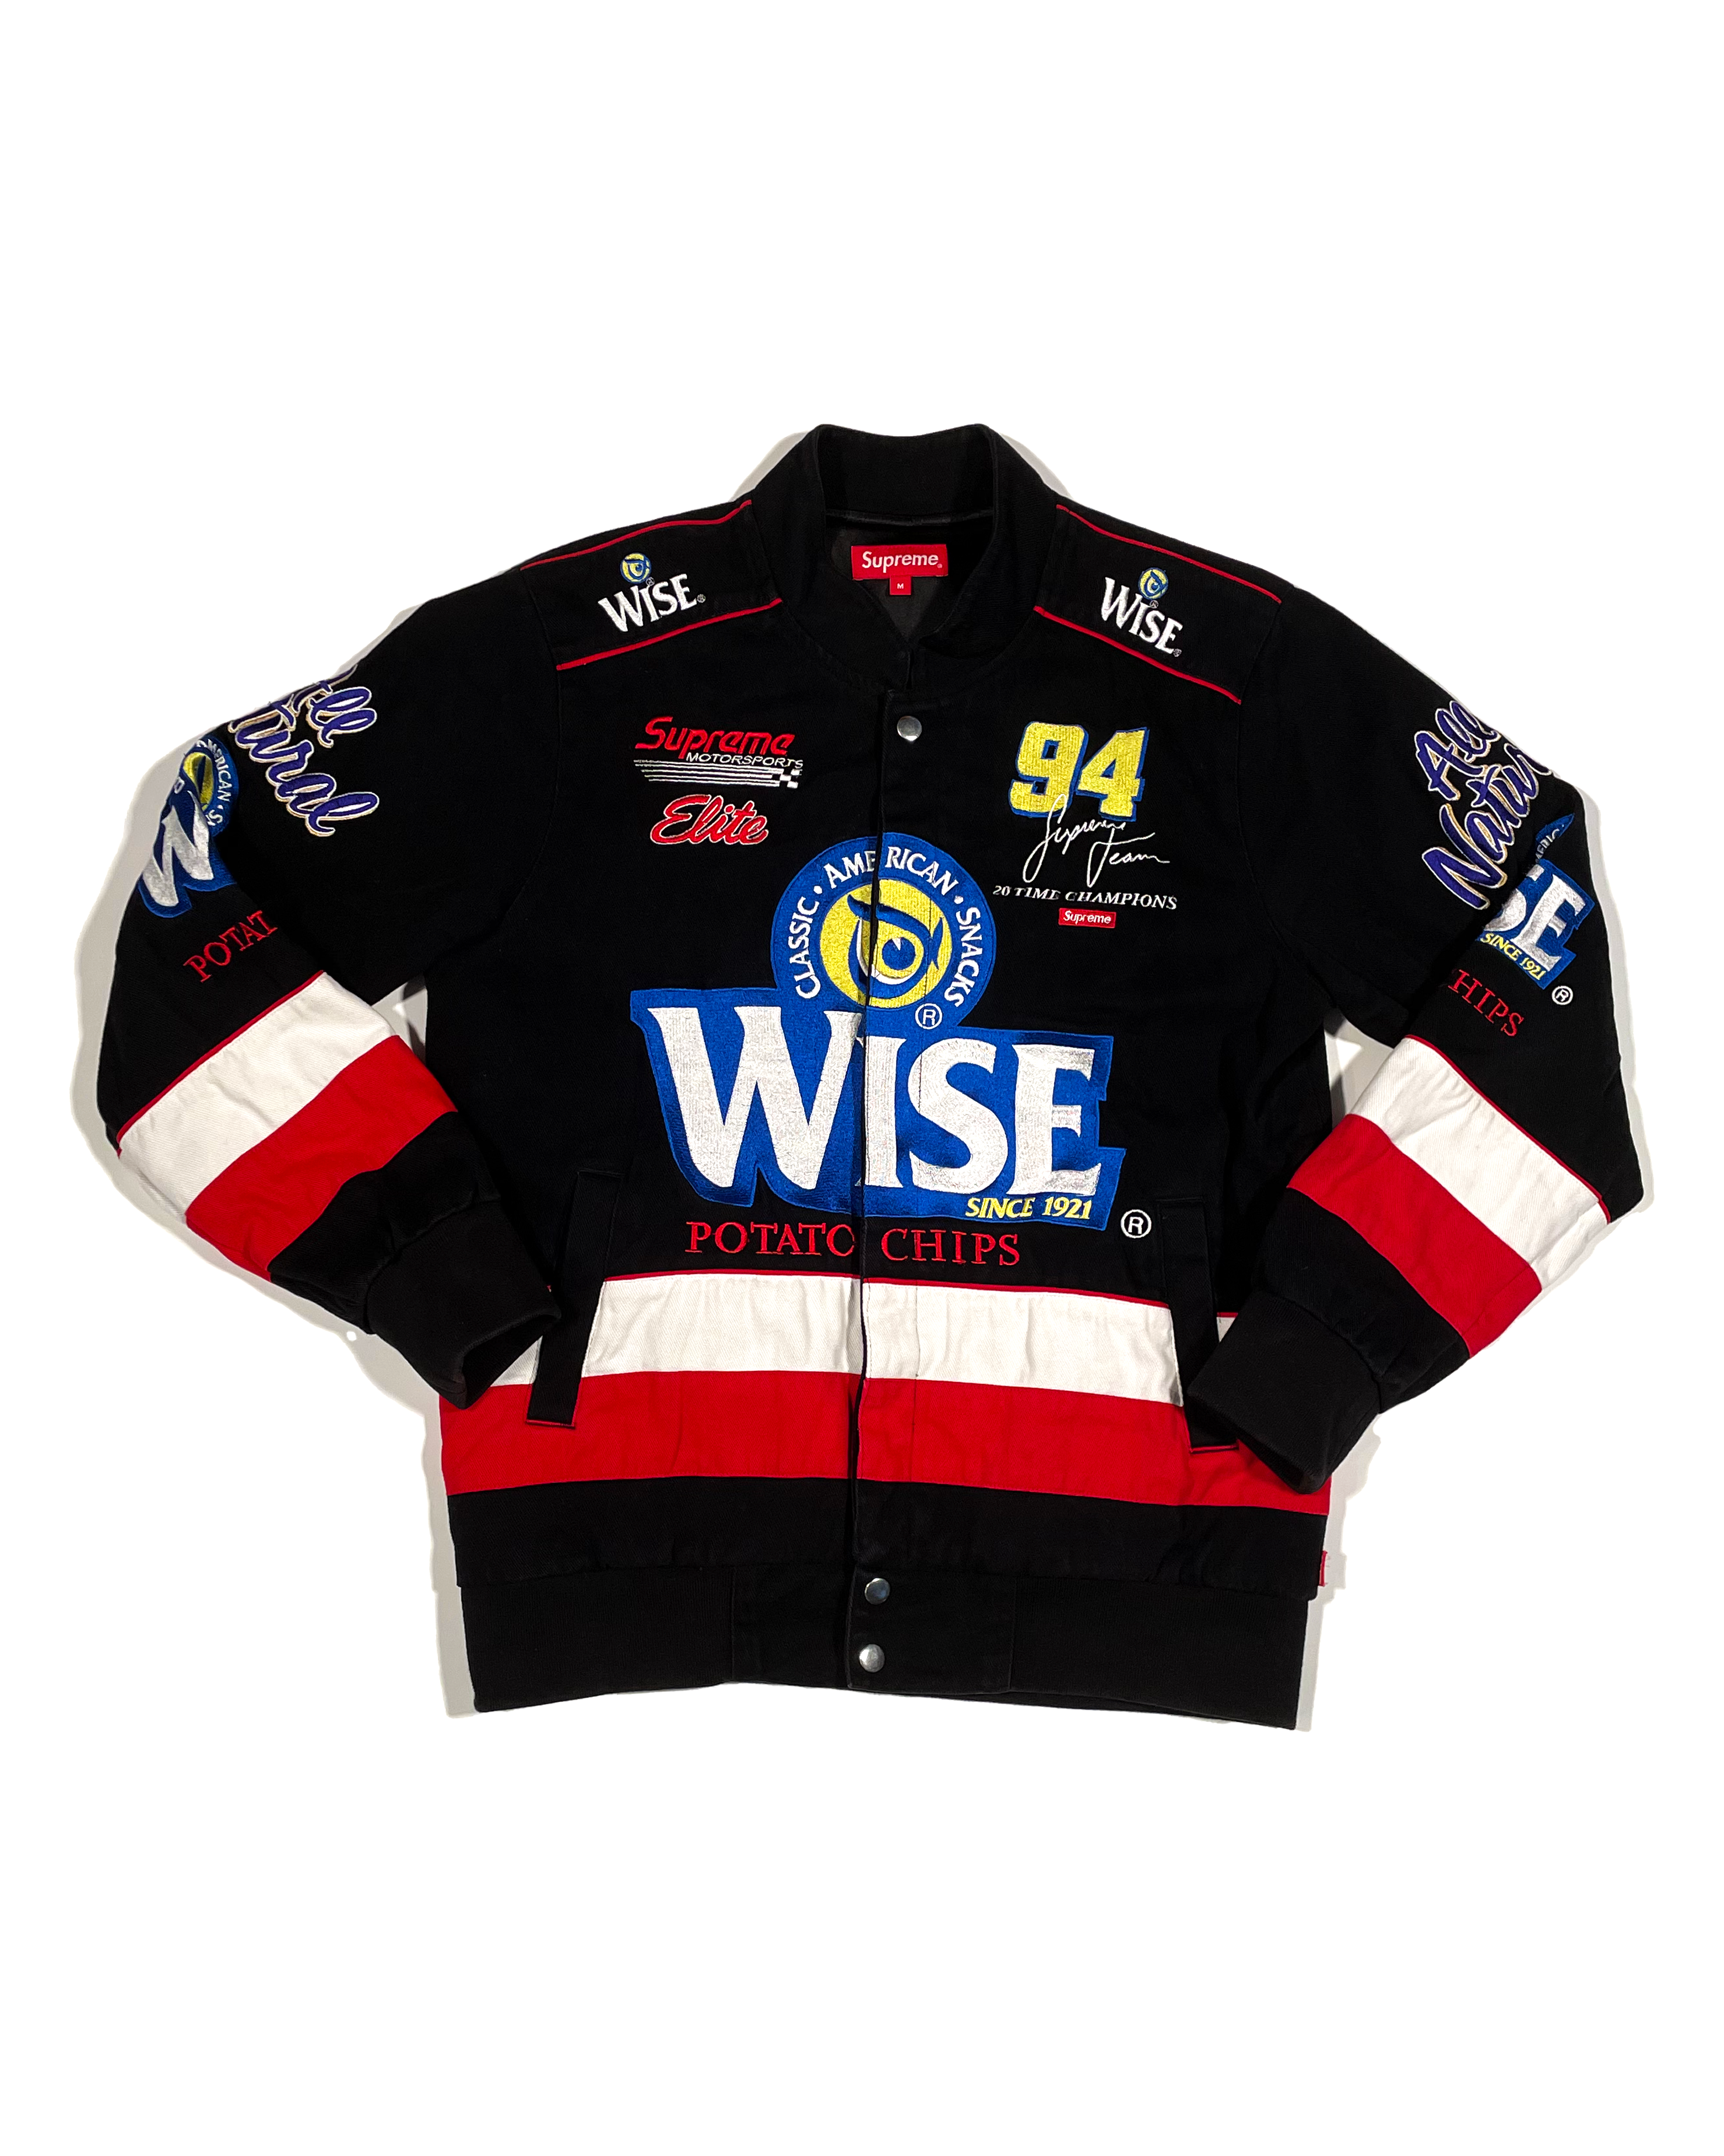 Supreme Wise Racing Jacket シュプリーム ジャケット